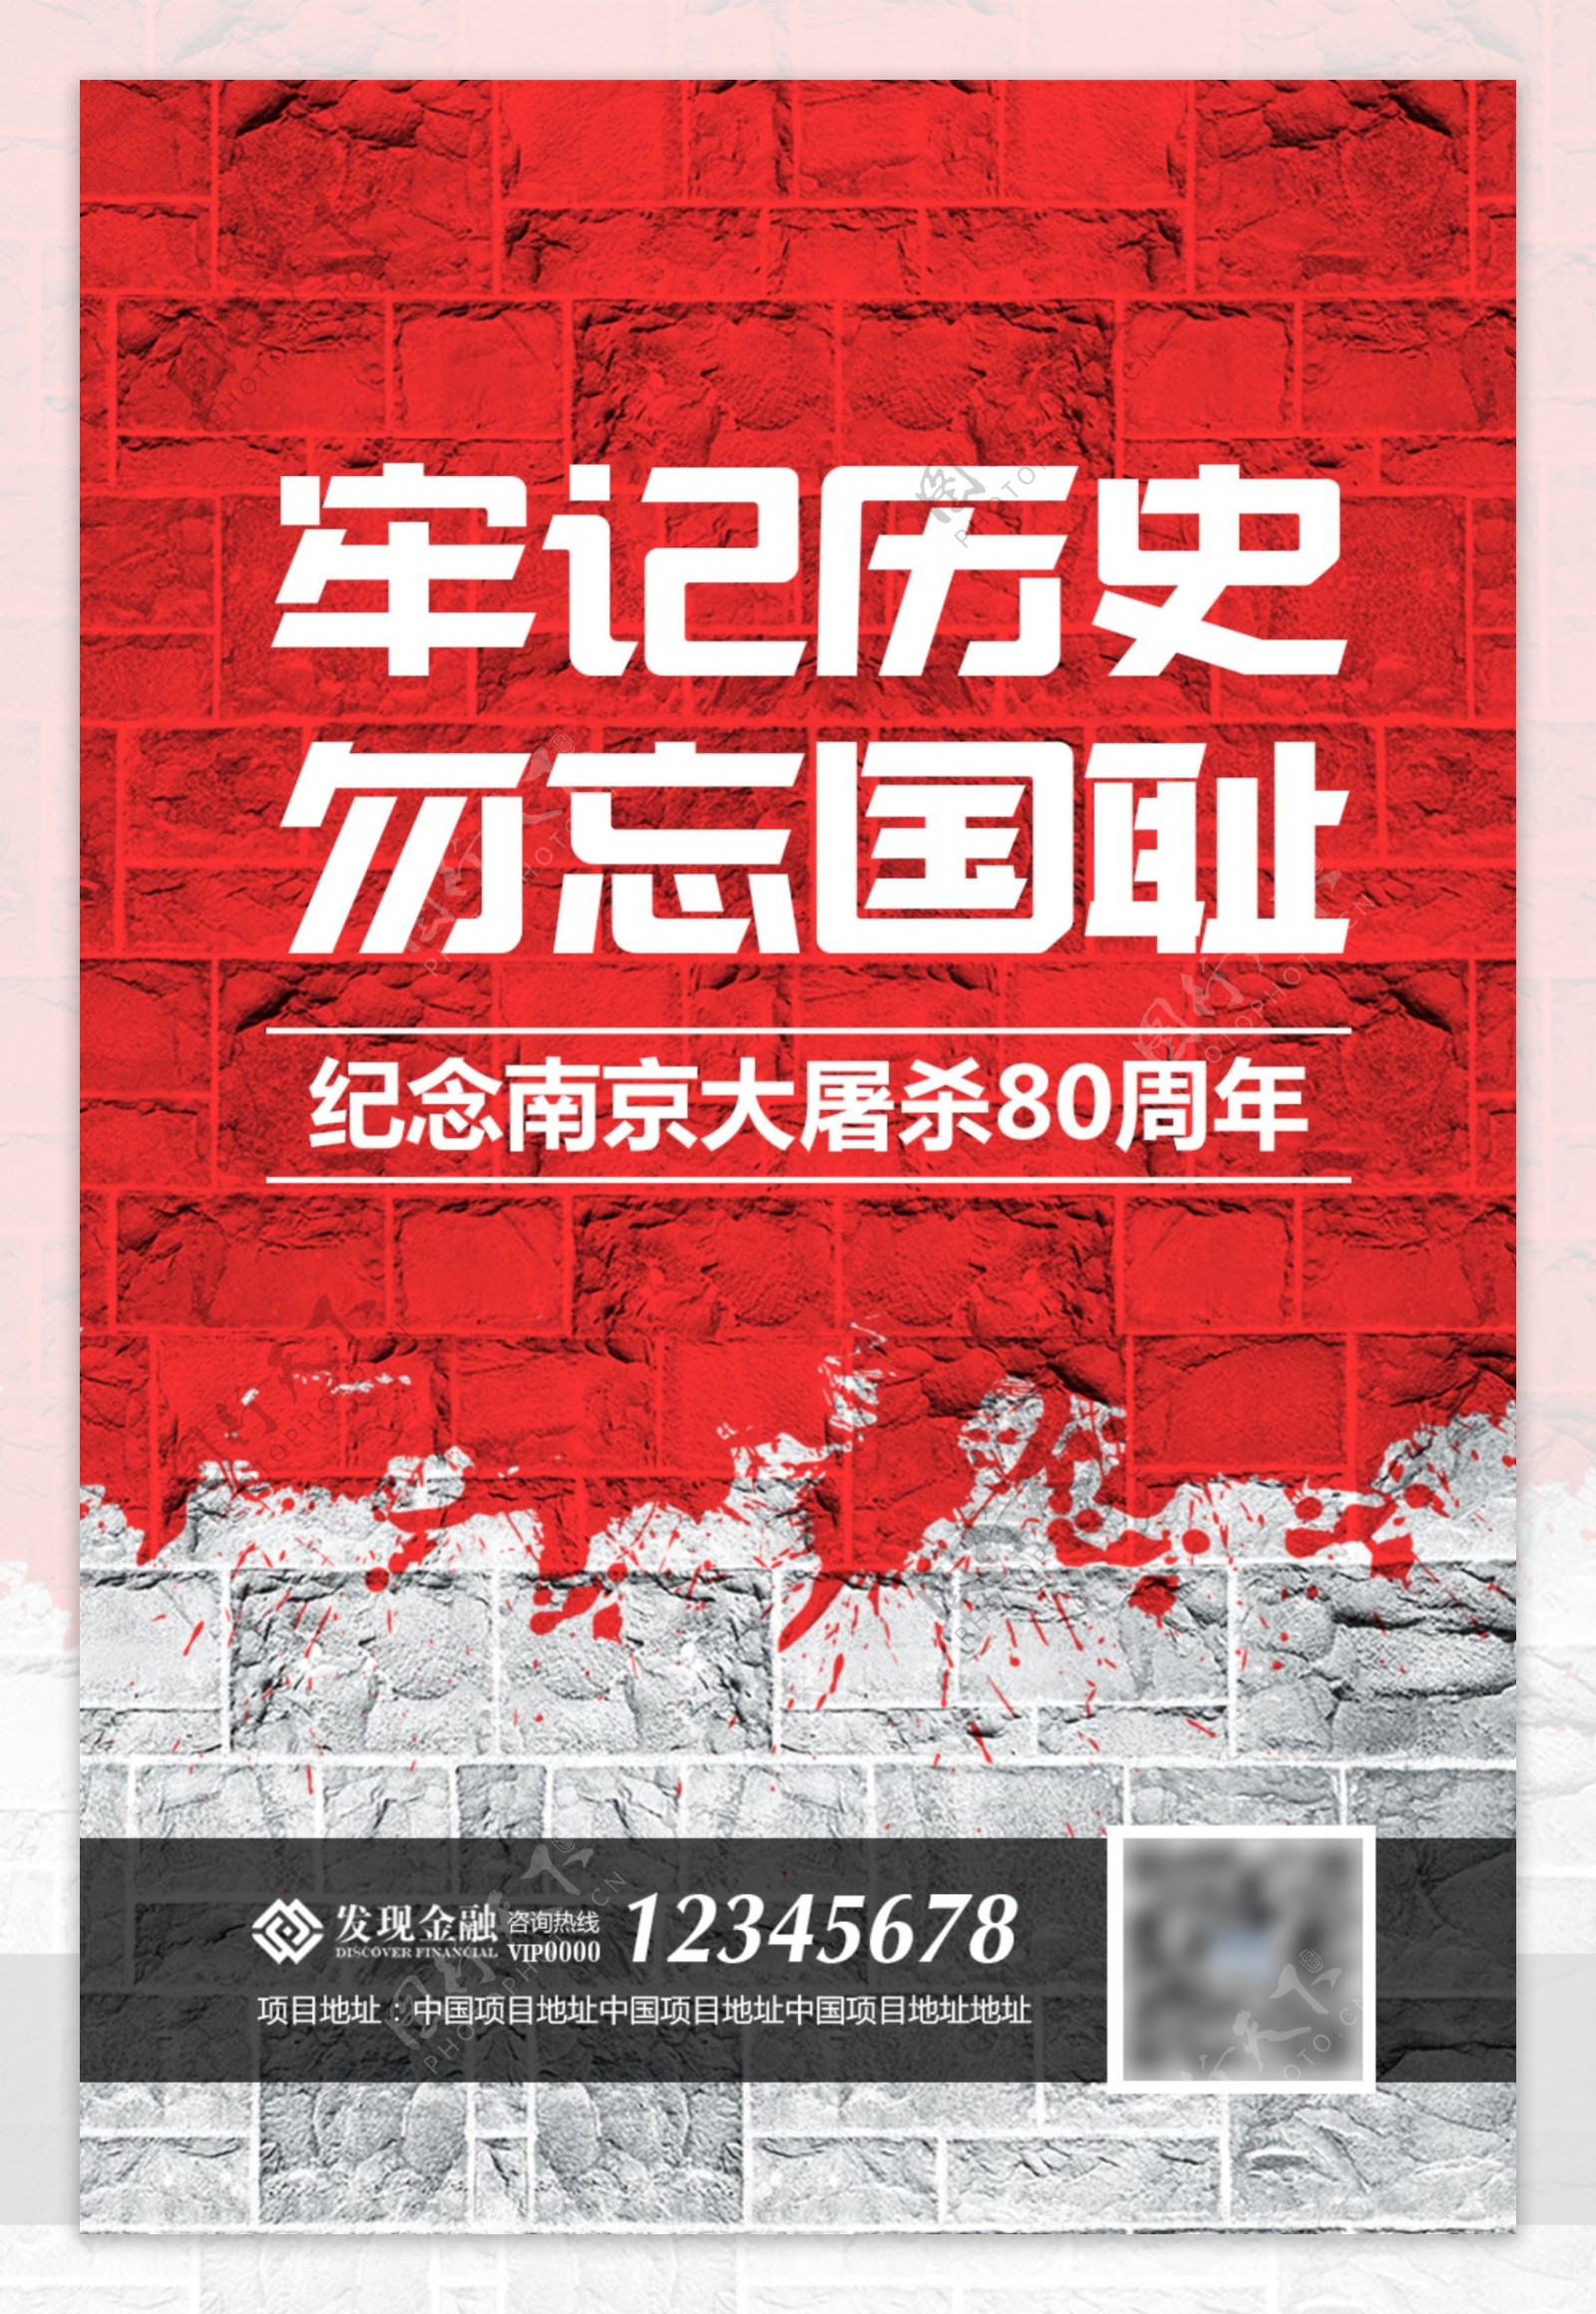 南京大屠杀海报